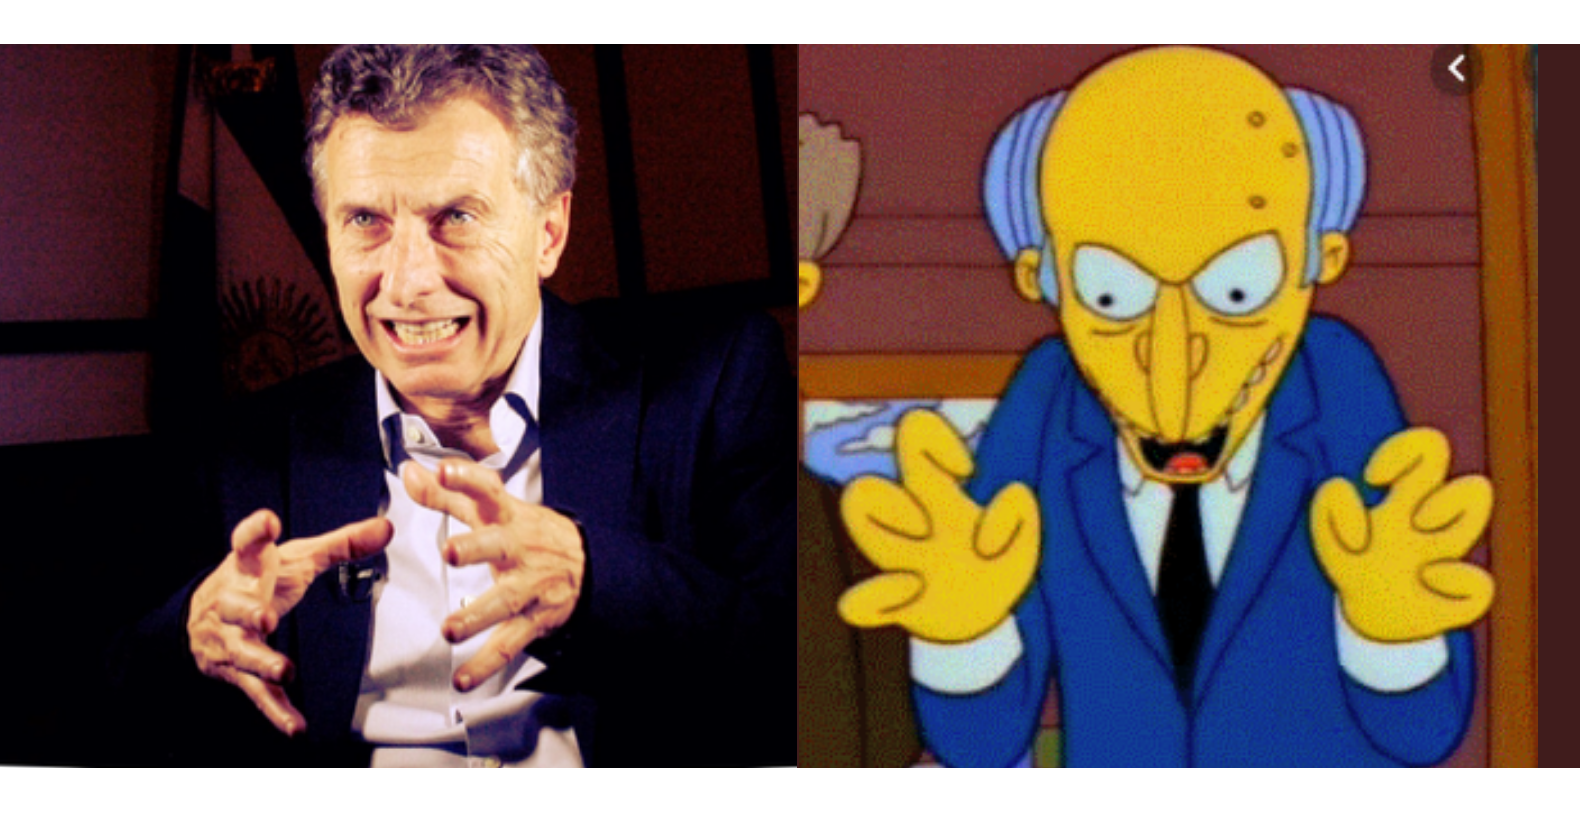 Unas cuantas fotos revelan el parecido de Mauricio Macri con el Señor Burns